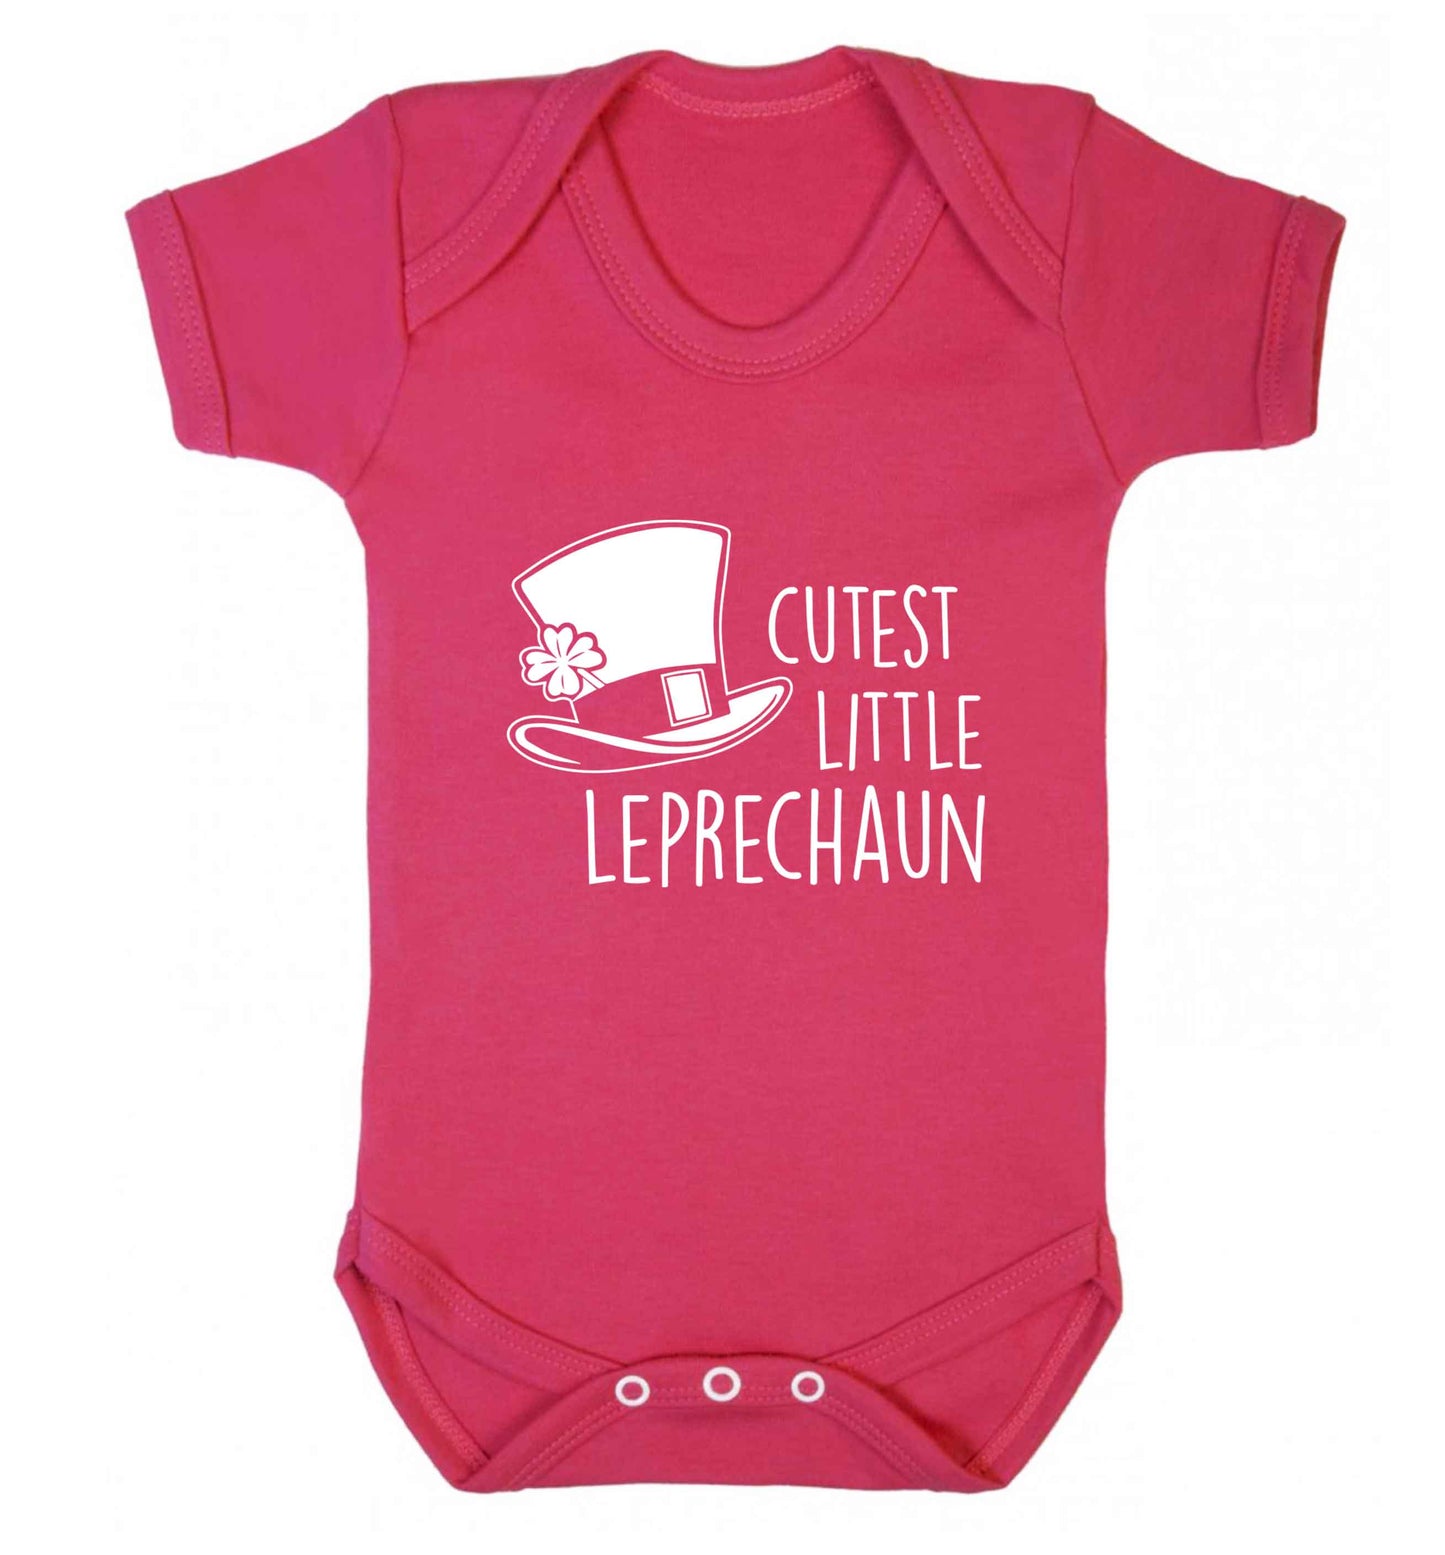 Cutest little leprechaun baby vest dark pink 18-24 months